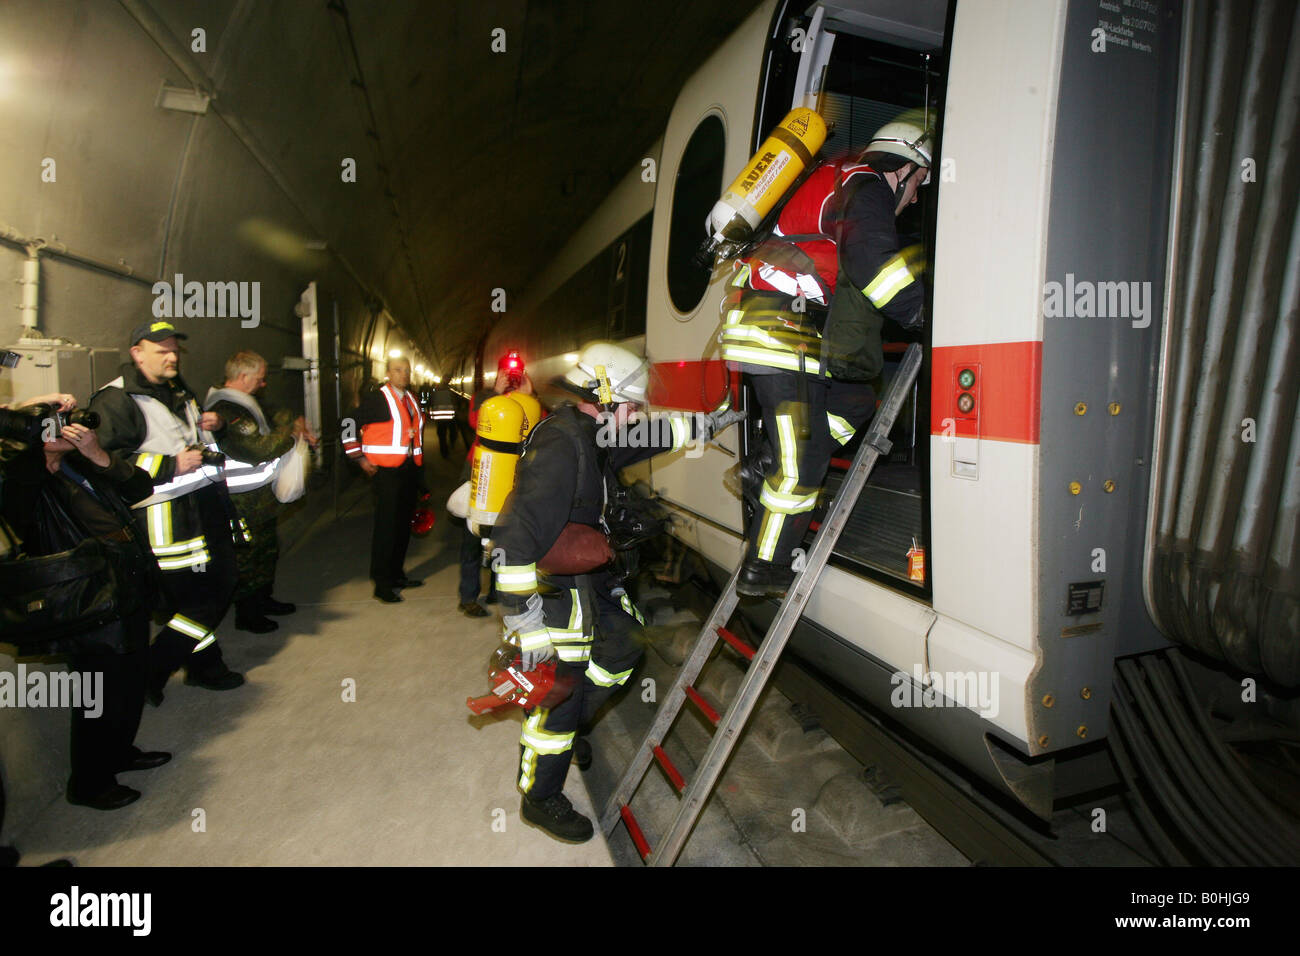 Les pompiers, le forage de sauvetage menées dans une glace à grande vitesse ou bullet train tunnel, Allemagne Banque D'Images